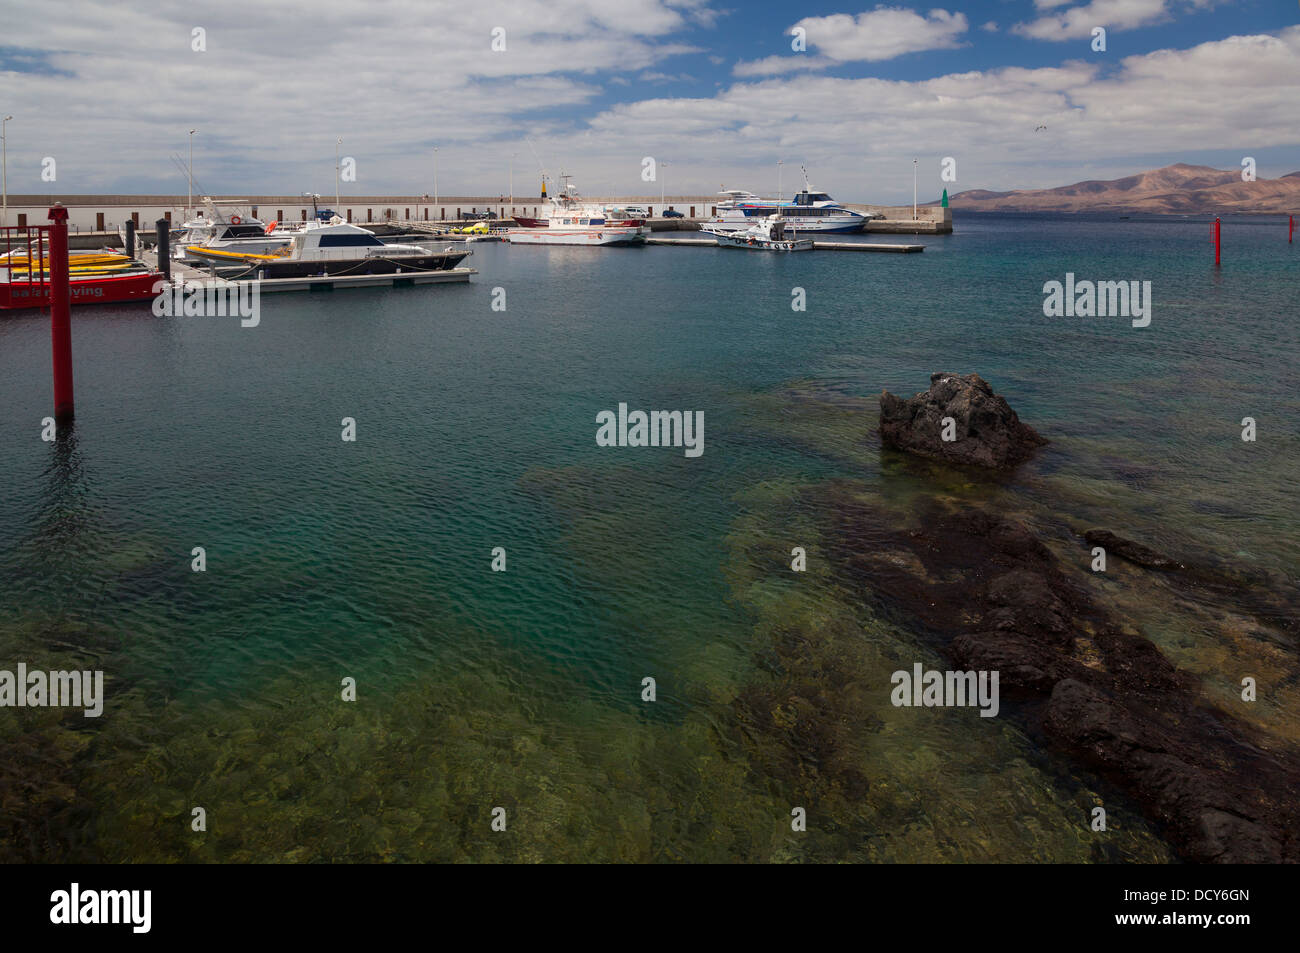 Puerto del Carmen marina, Lanzarote Foto Stock